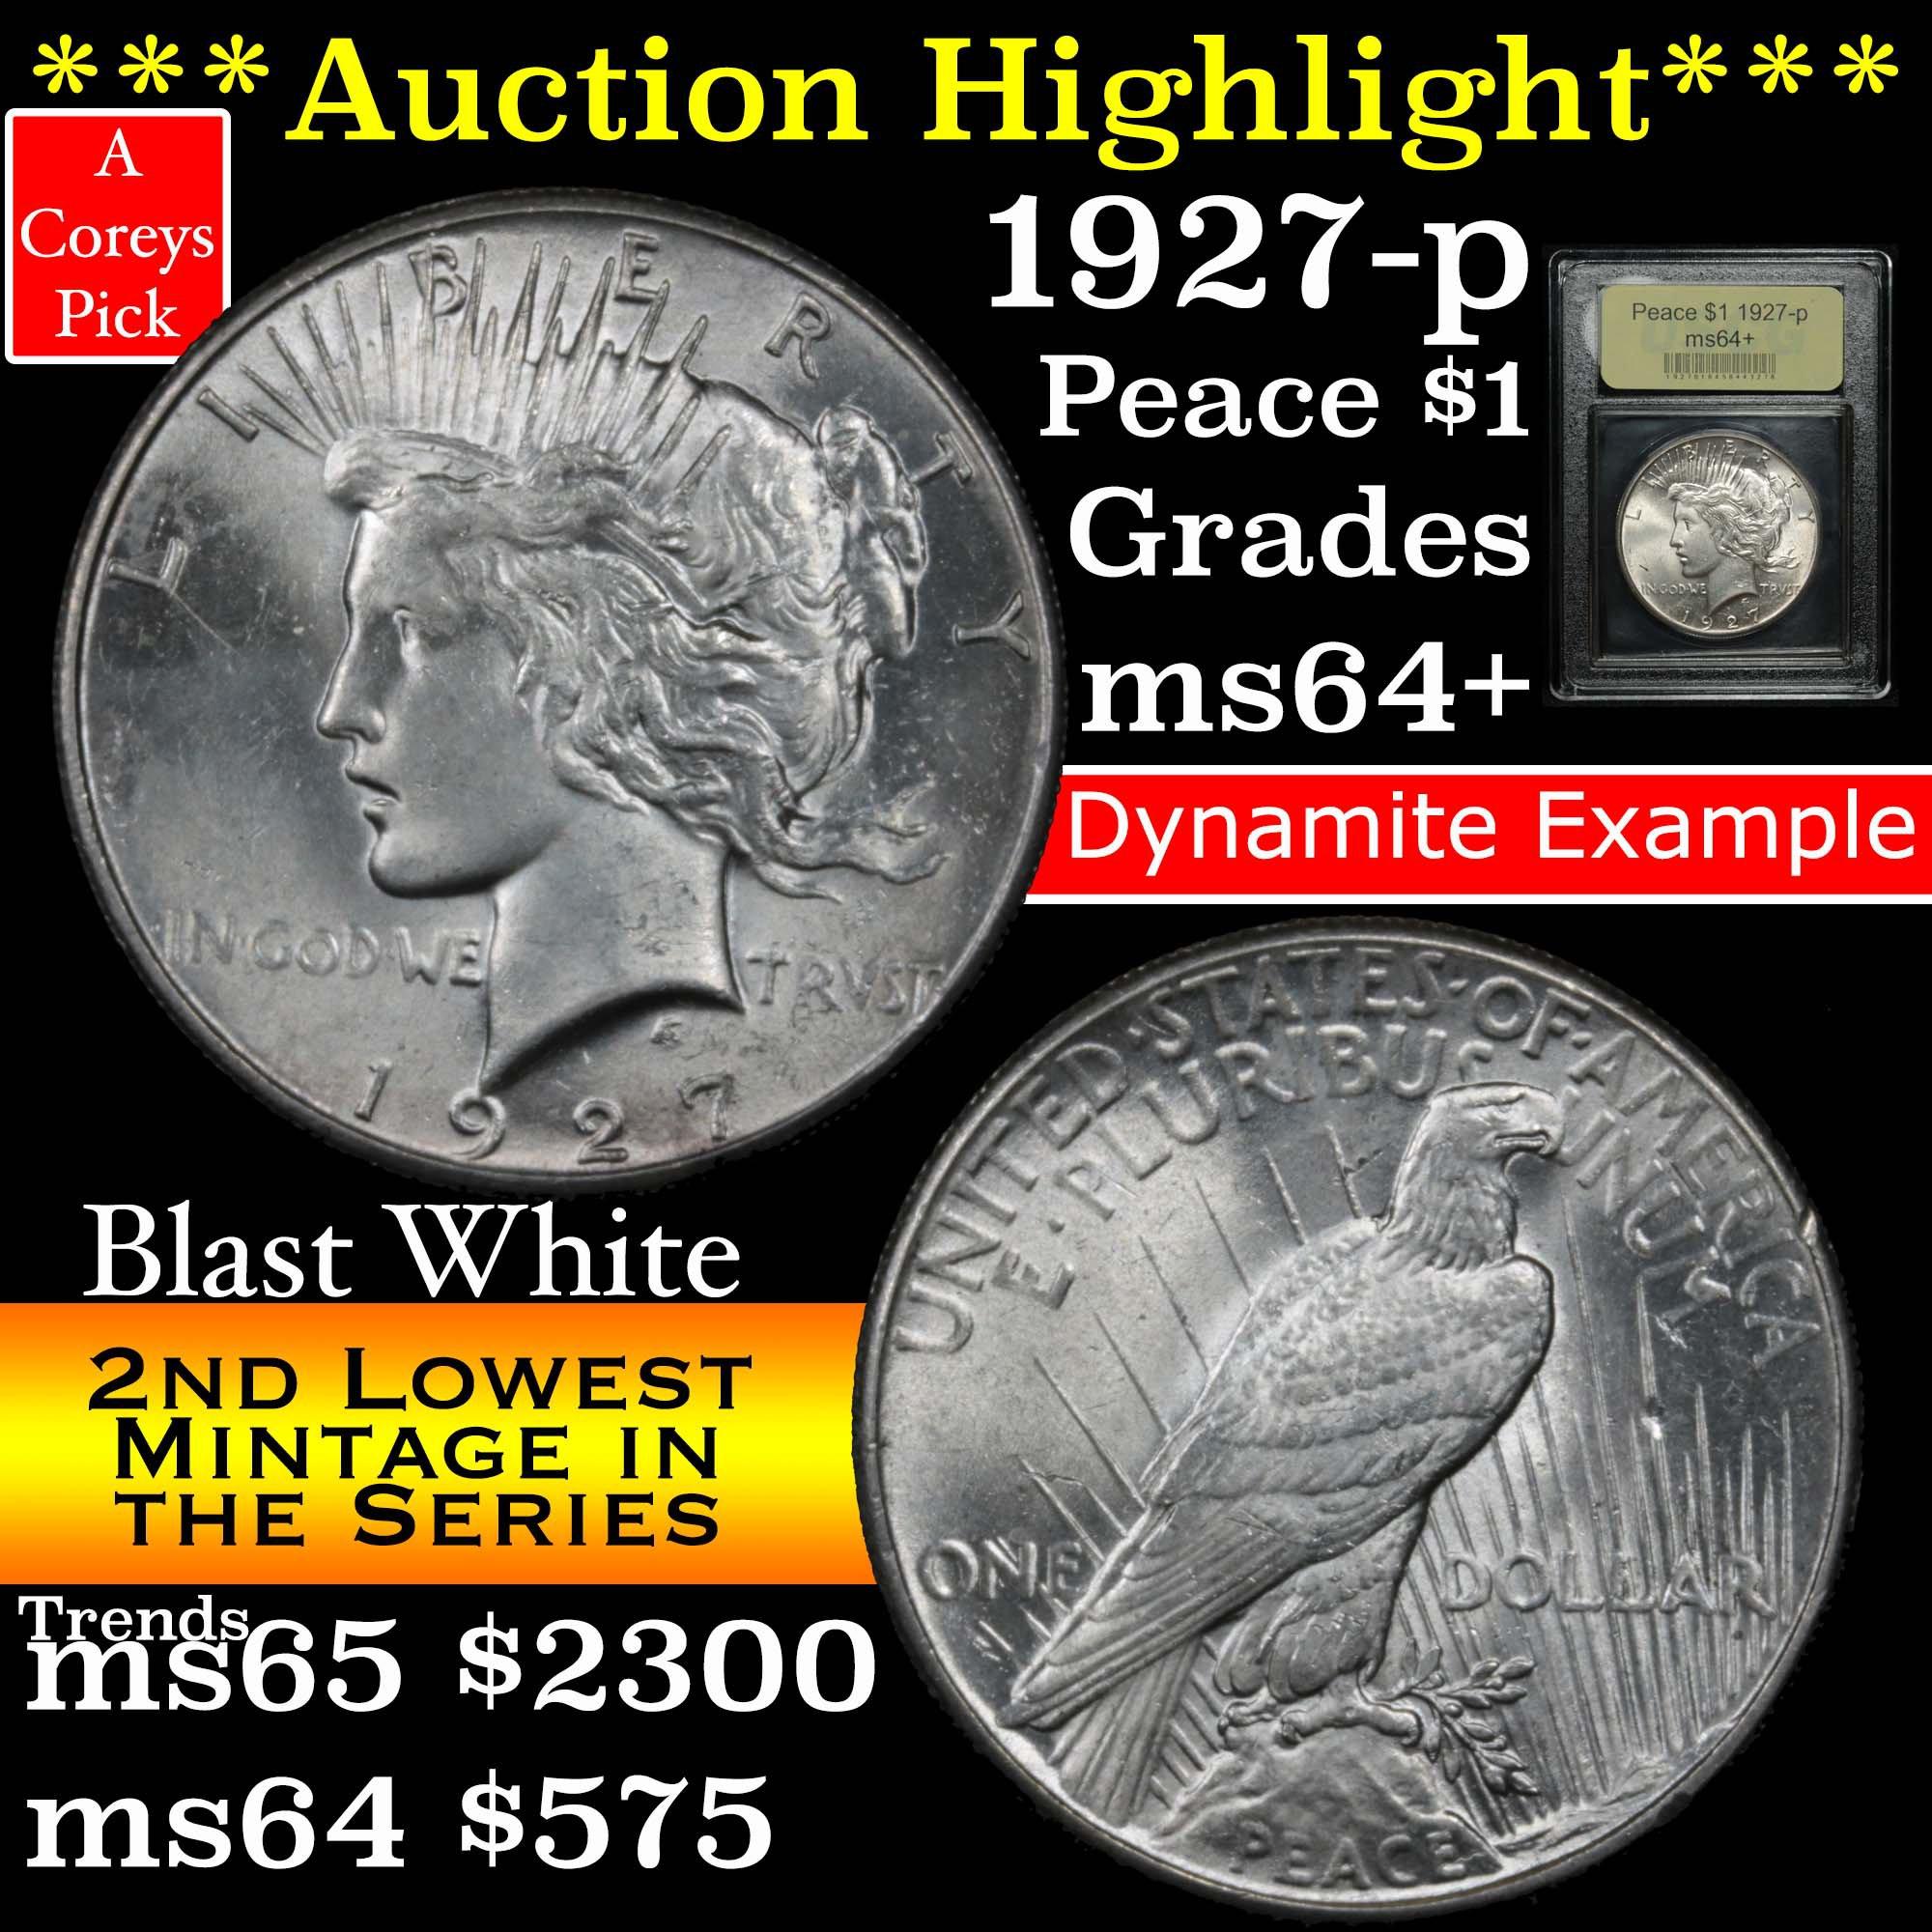 ***Auction Highlight*** 1927-p Peace Dollar $1 Graded Choice+ Unc by USCG (fc)